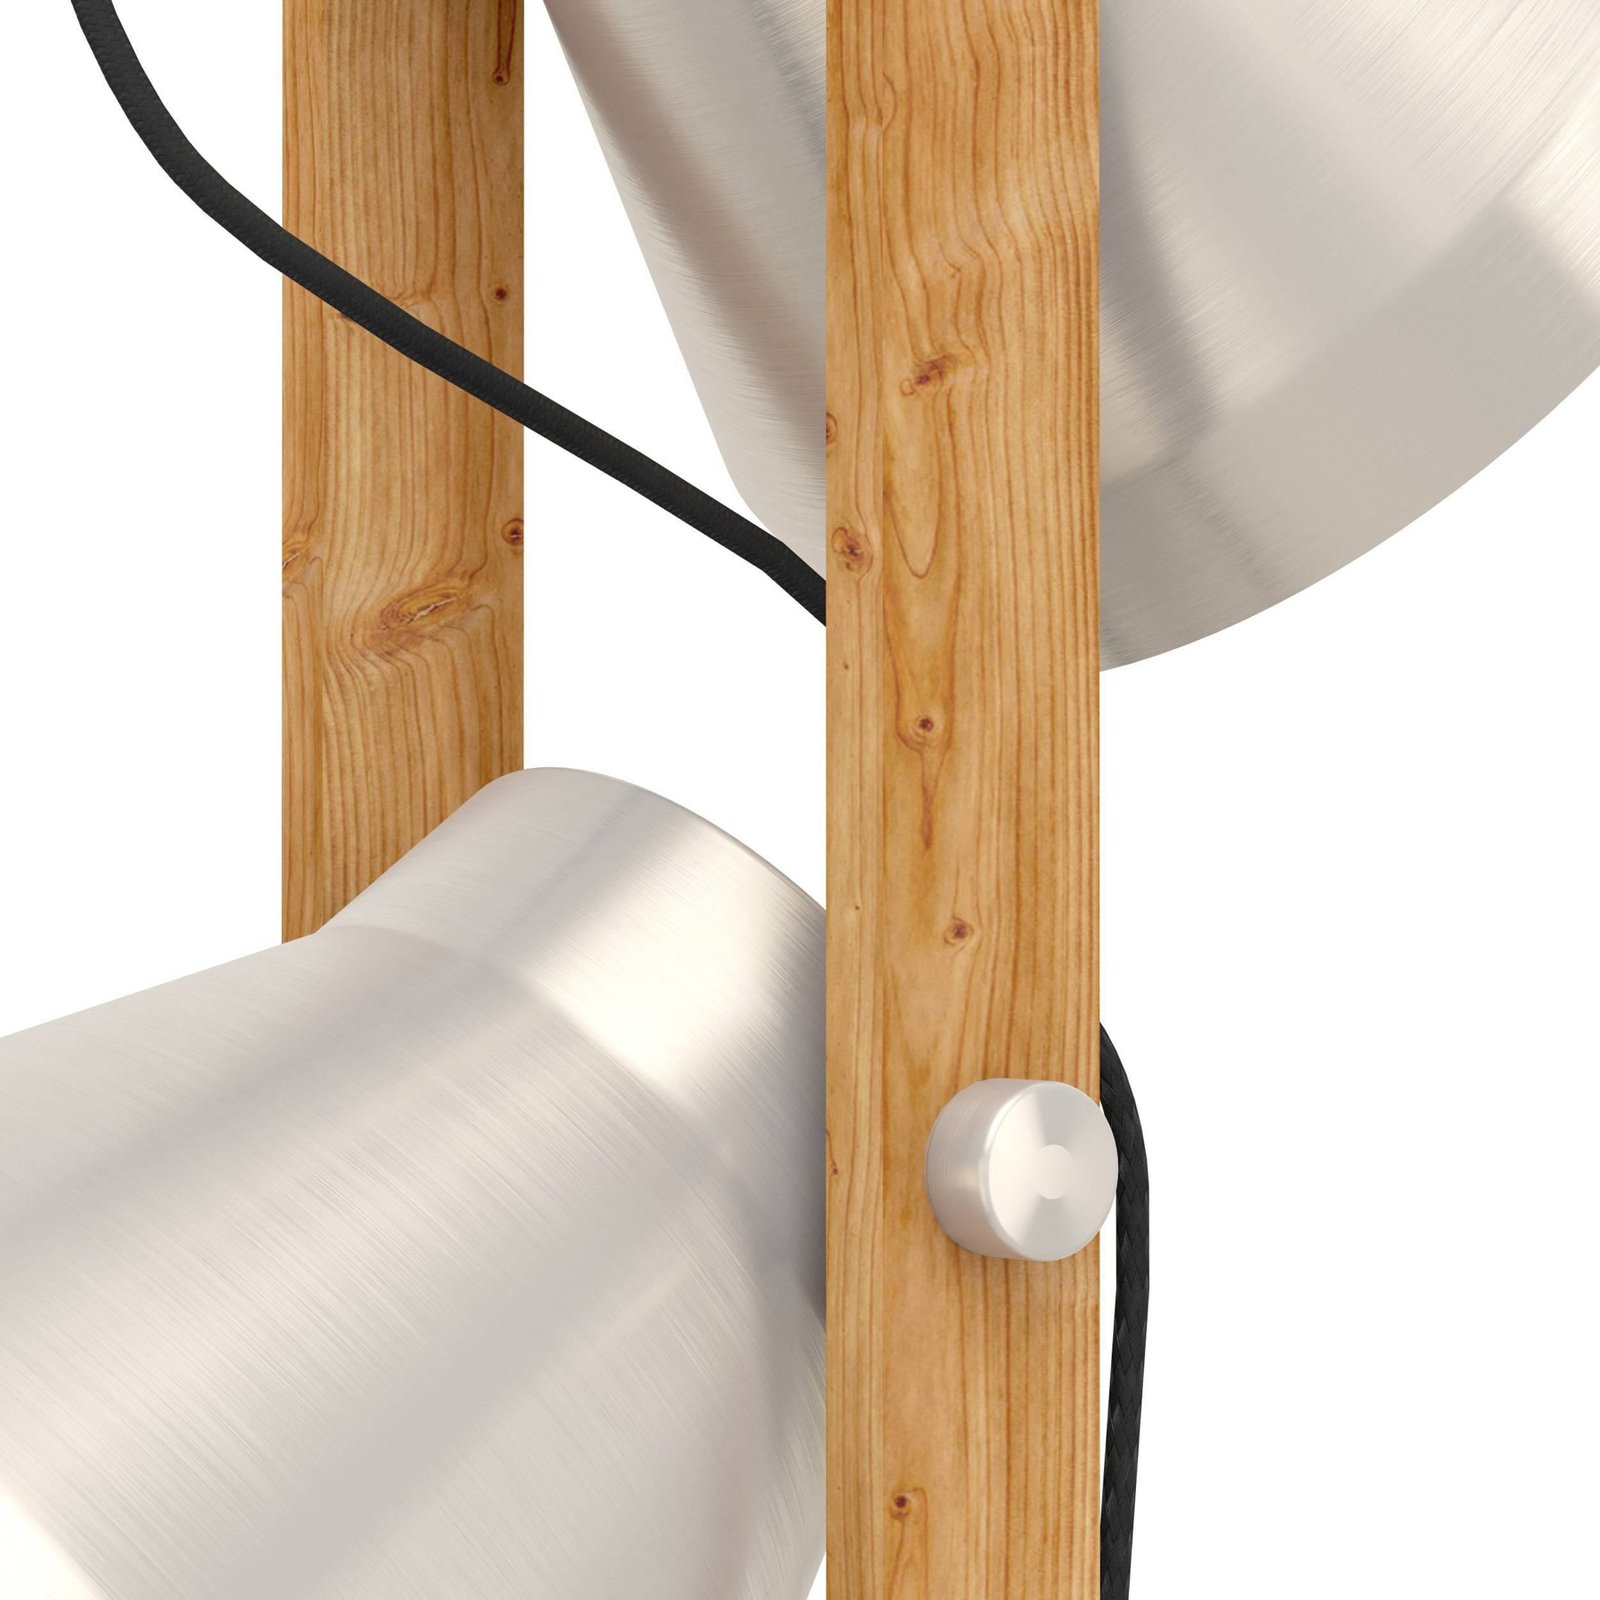 Cawton lámpara de pie, altura 134,5 cm, acero/marrón, 2 luces acero